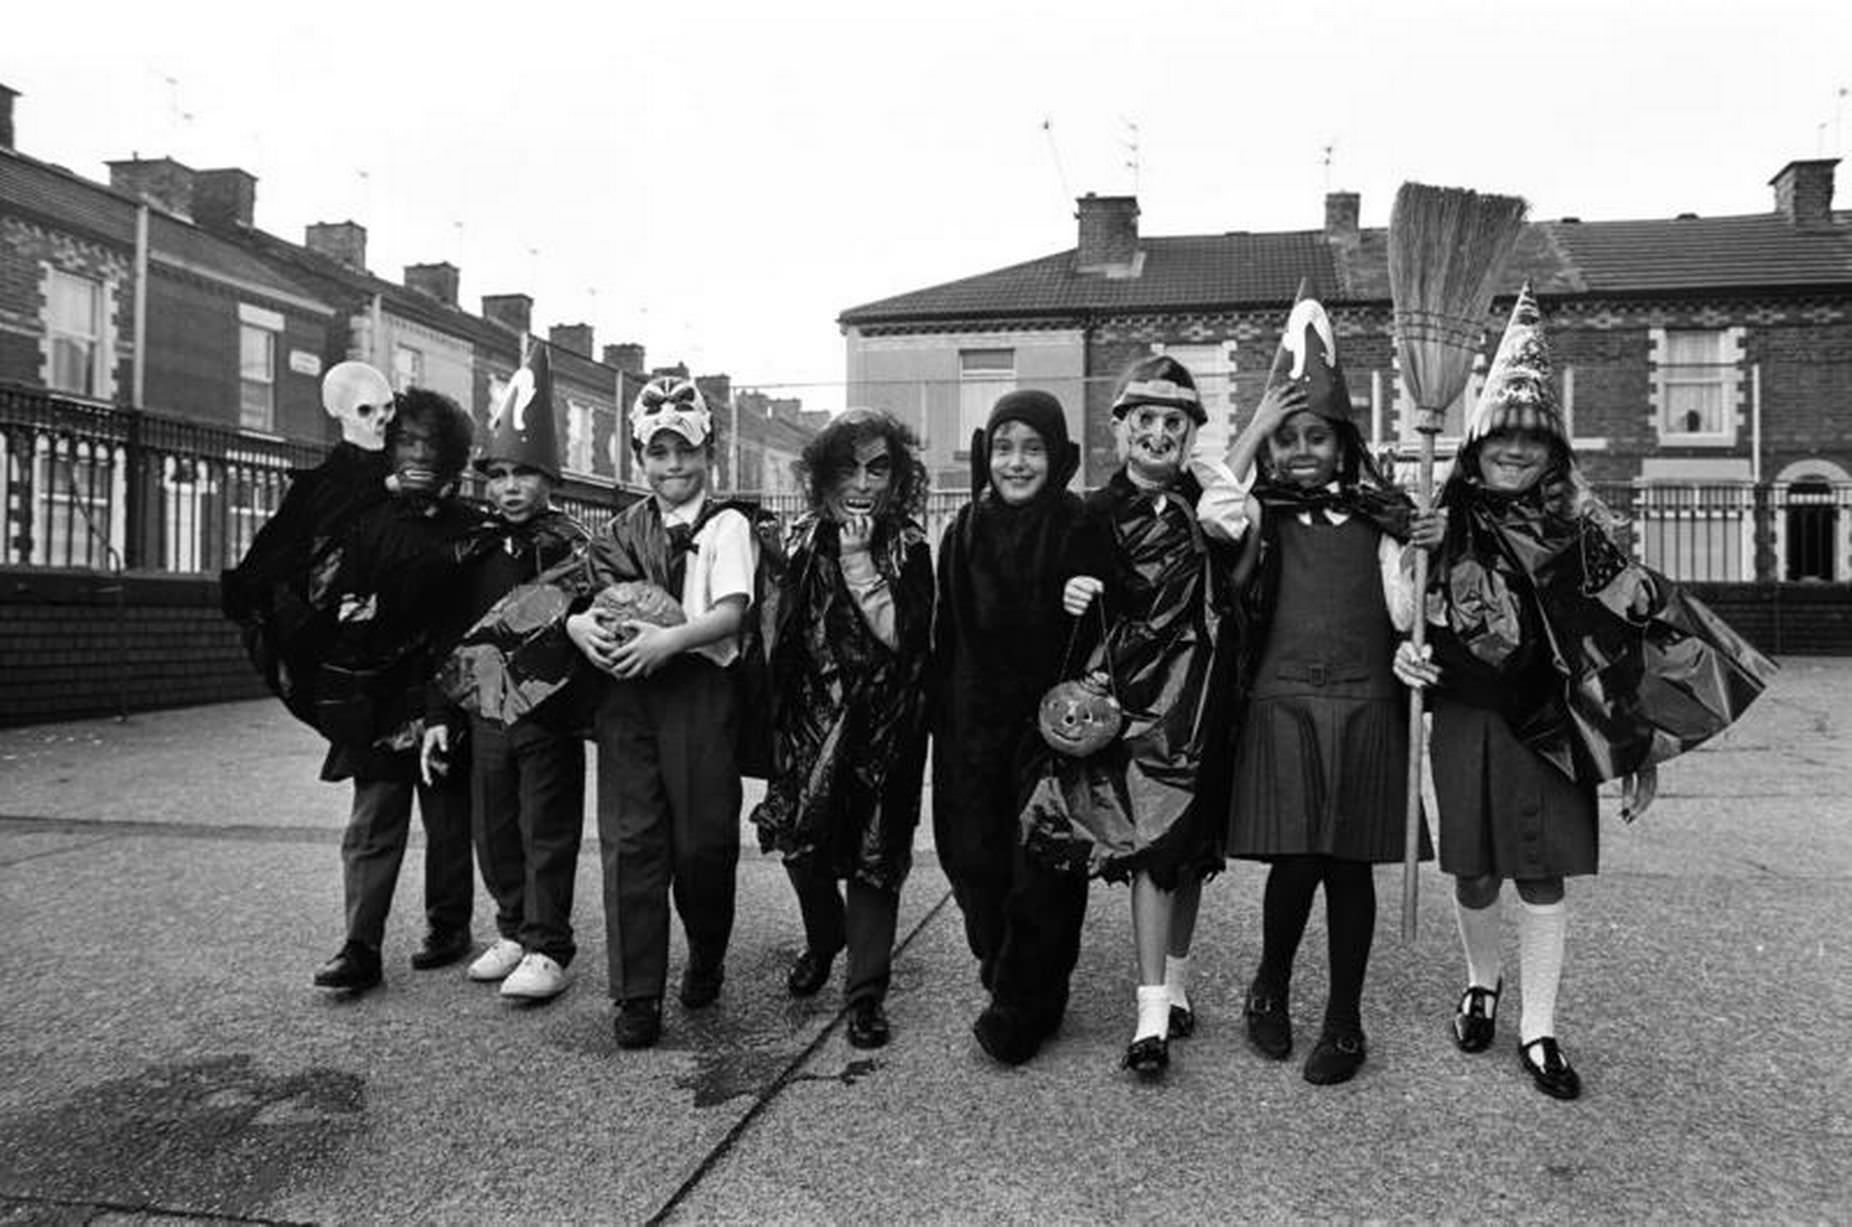 Children celebrating Halloween in Liverpool. 31st October 1989.